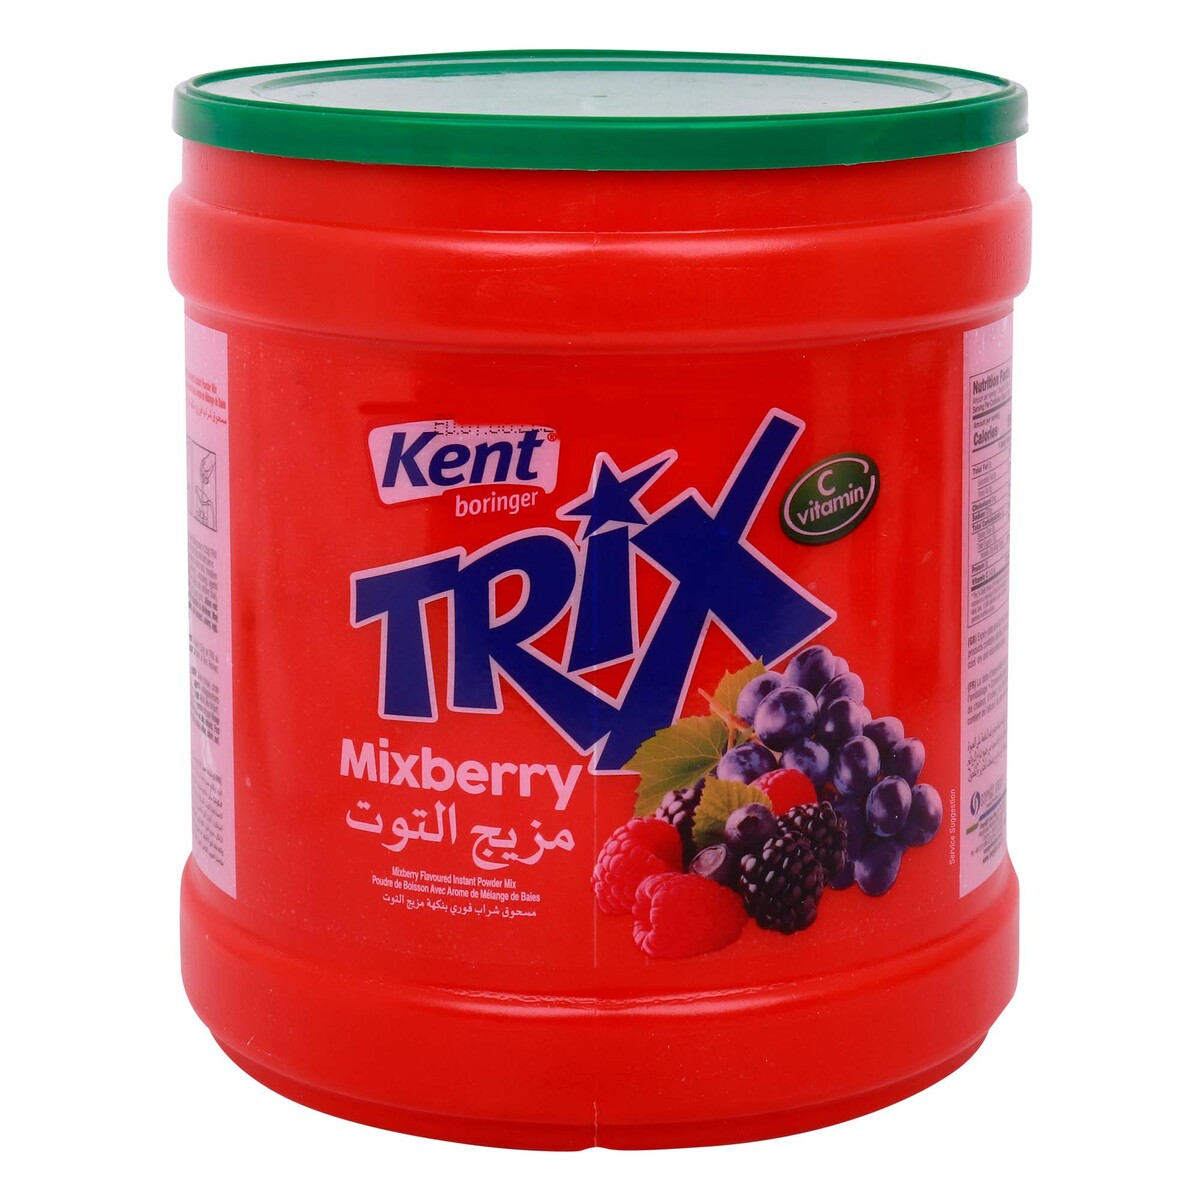 Kent Boringer Trix Mixberry 2.5 kg